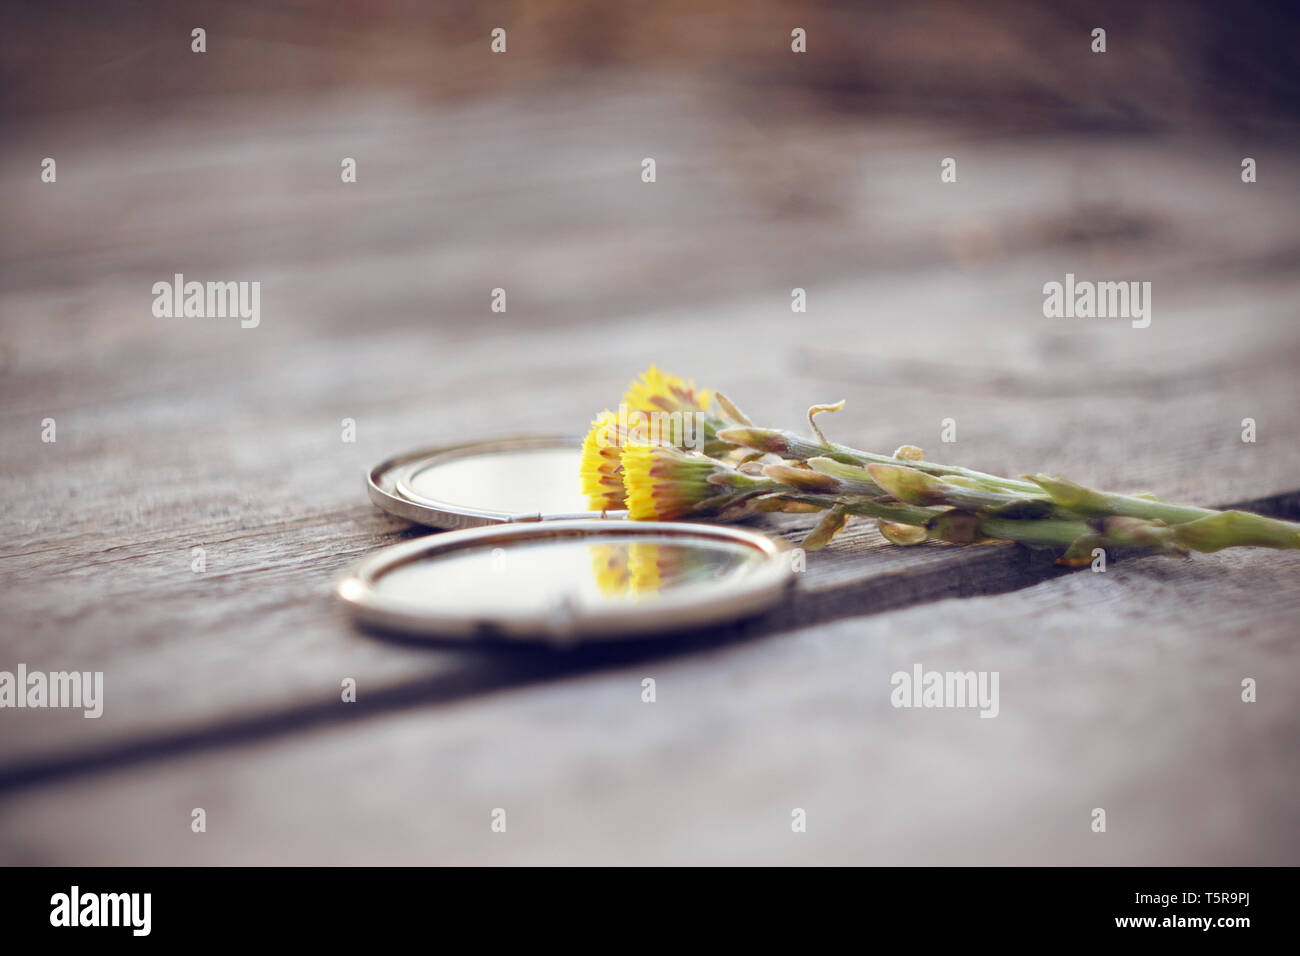 Healing Flowers gelb Huflattich liegen mit einem offenen Muscheln Pocket Mirror auf einer hölzernen Graue Tabelle Stockfoto